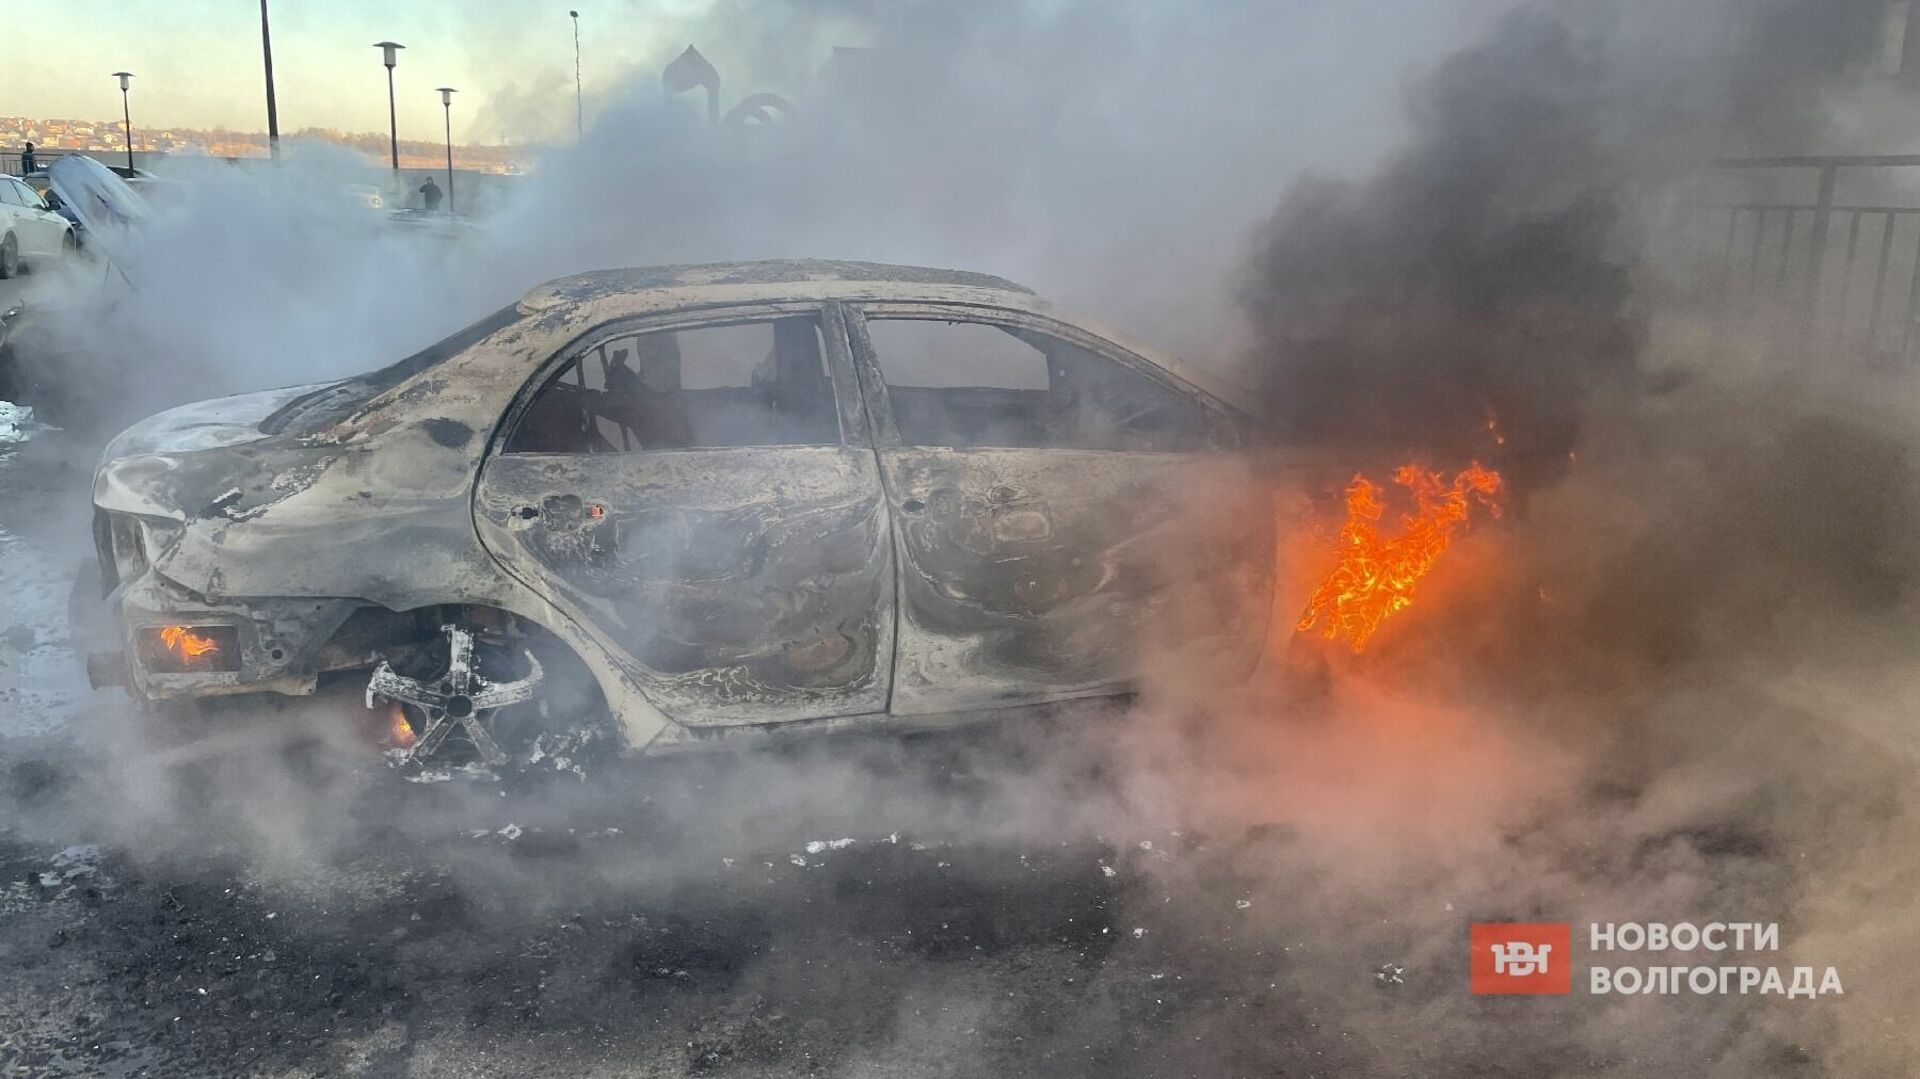 Машина после взрыва. В Волгограде взорвалась машина.